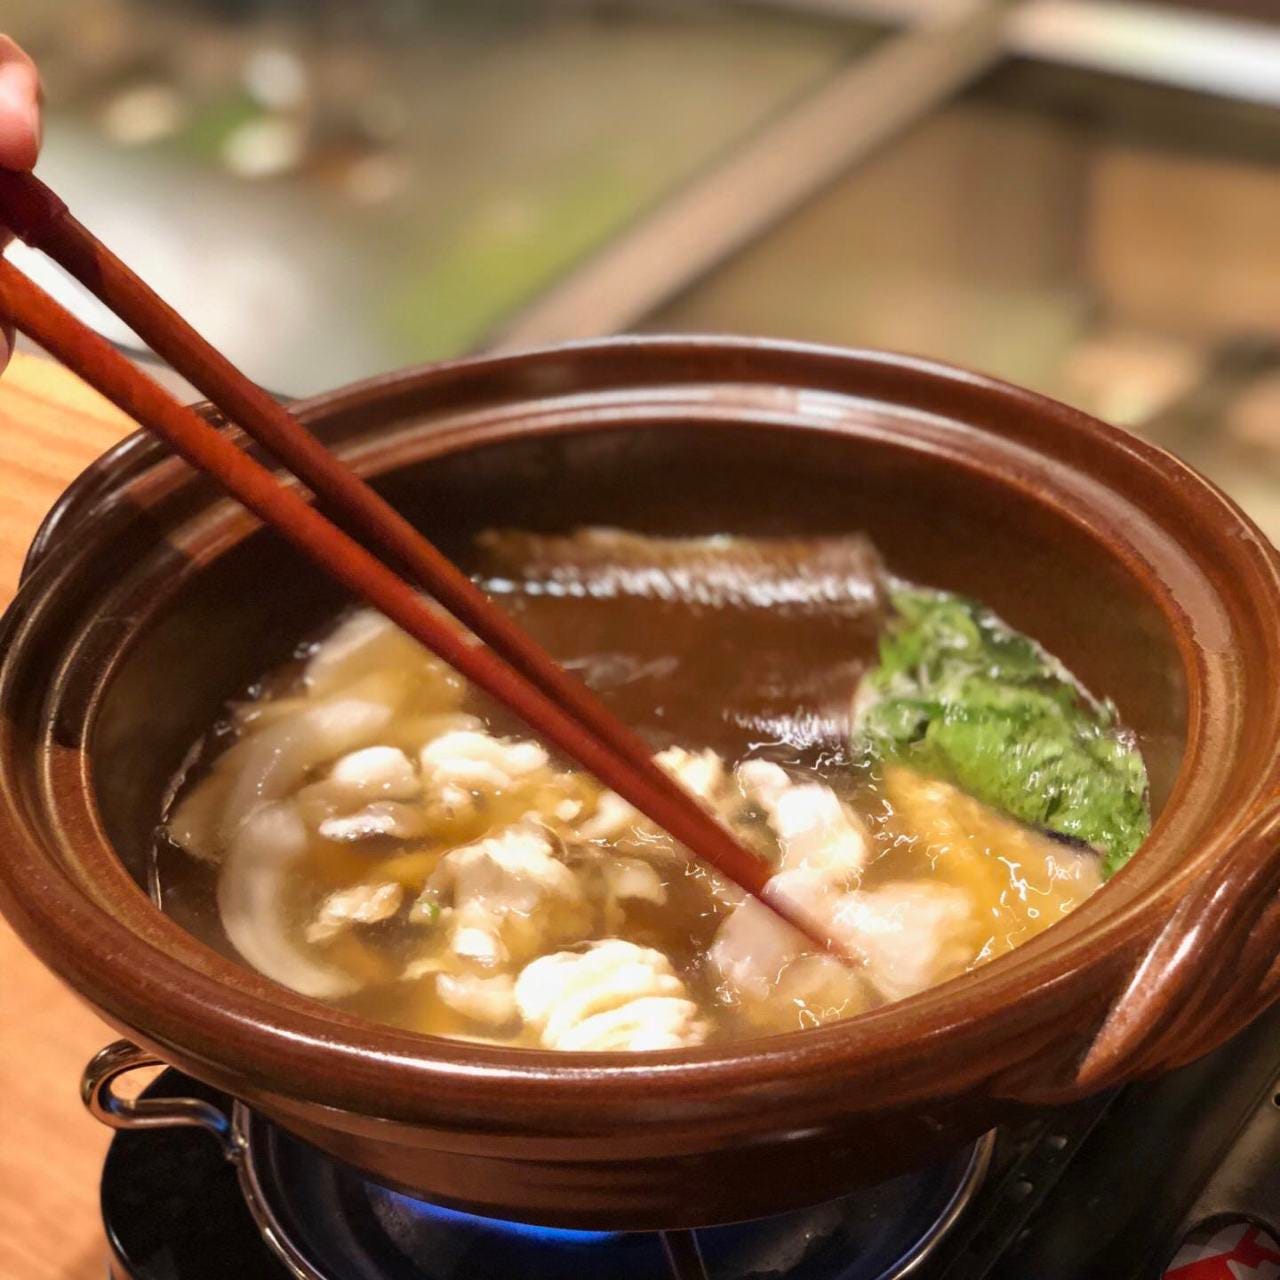 京都和食きはる照片 四条乌丸 乌丸御池 割烹 传统的高级日本料理 Gurunavi 日本美食餐厅指南